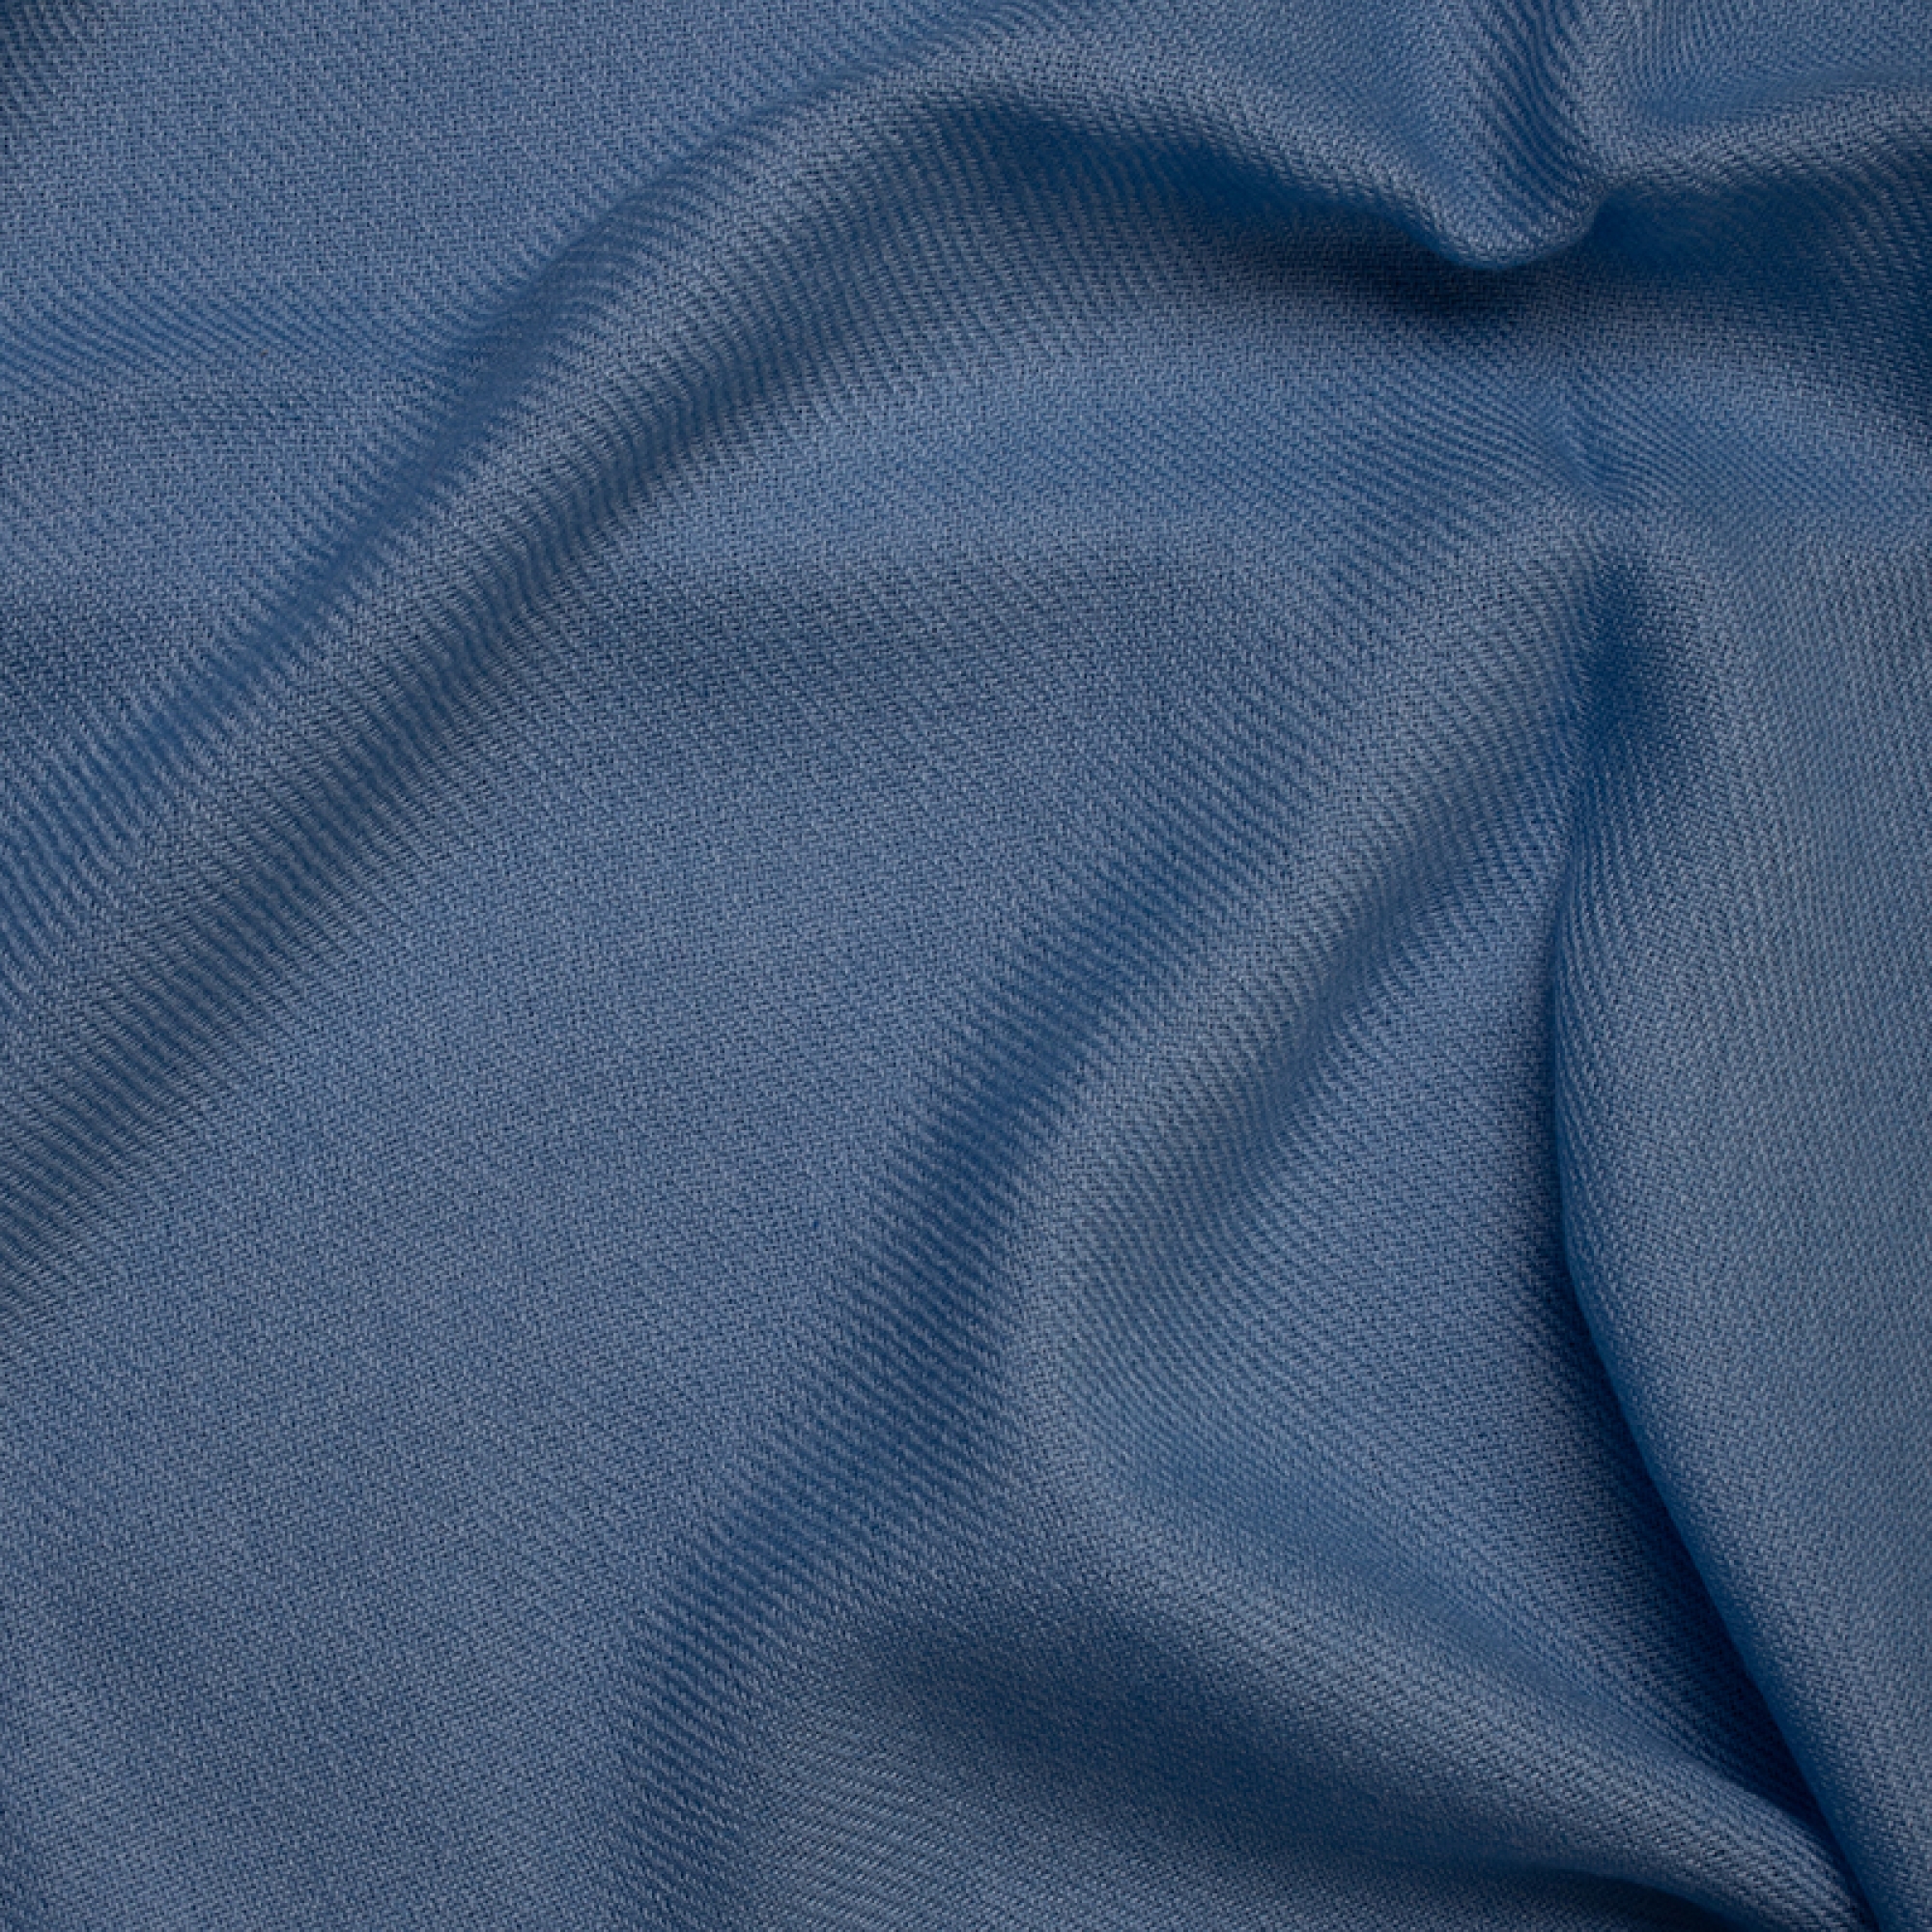 Cachemire accessoires couvertures plaids toodoo plain xl 240 x 260 bleu celeste 240 x 260 cm